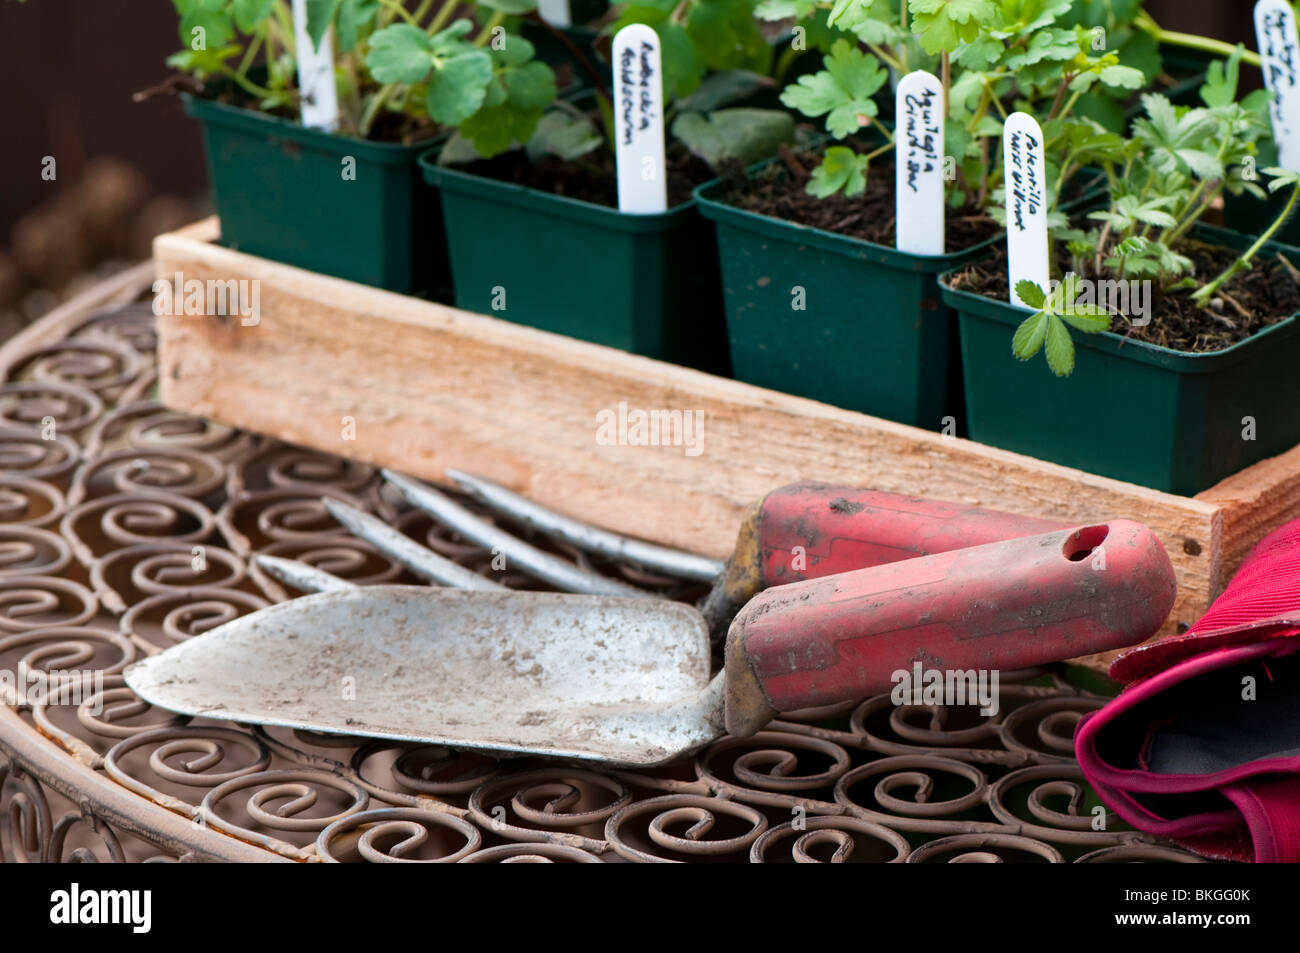 Cazzuola a mano, forcella, guanti da giardinaggio e una selezione di vivaio piante erbacee coltivate piante in vaso pronto per piantare in giardino Foto Stock